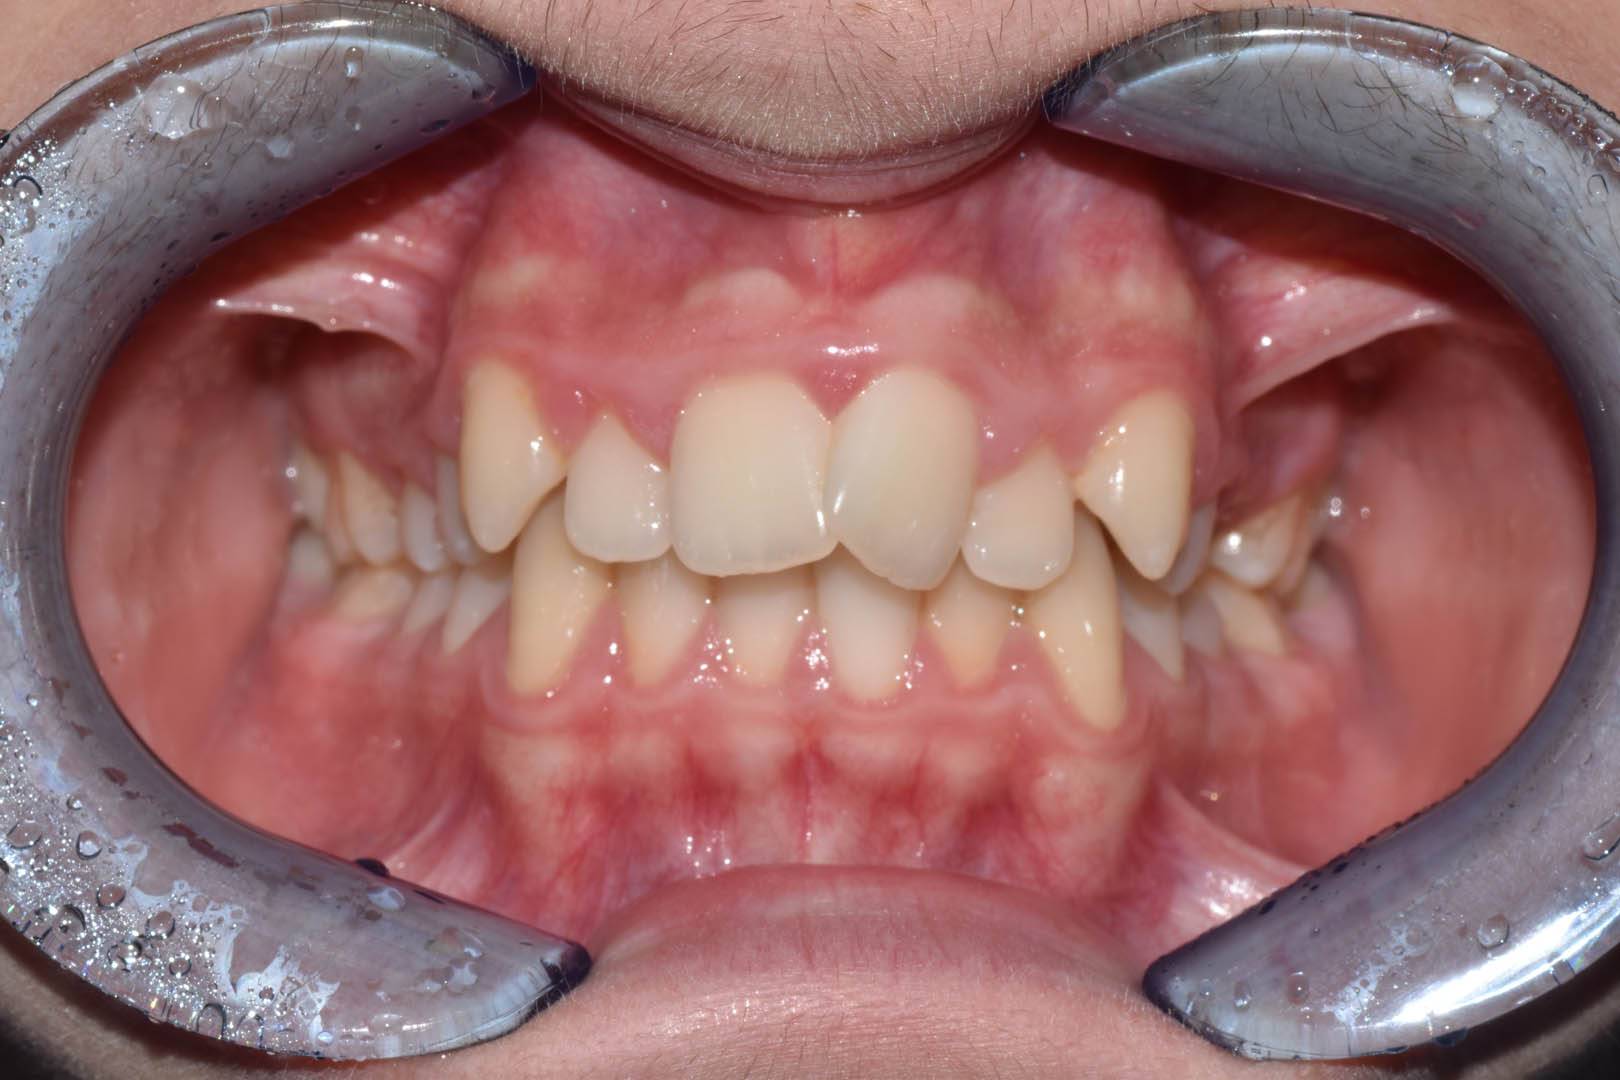 odontocentro-monza-brianza-casi-clinici-ortodonzia-fissa-20-mesi (2)